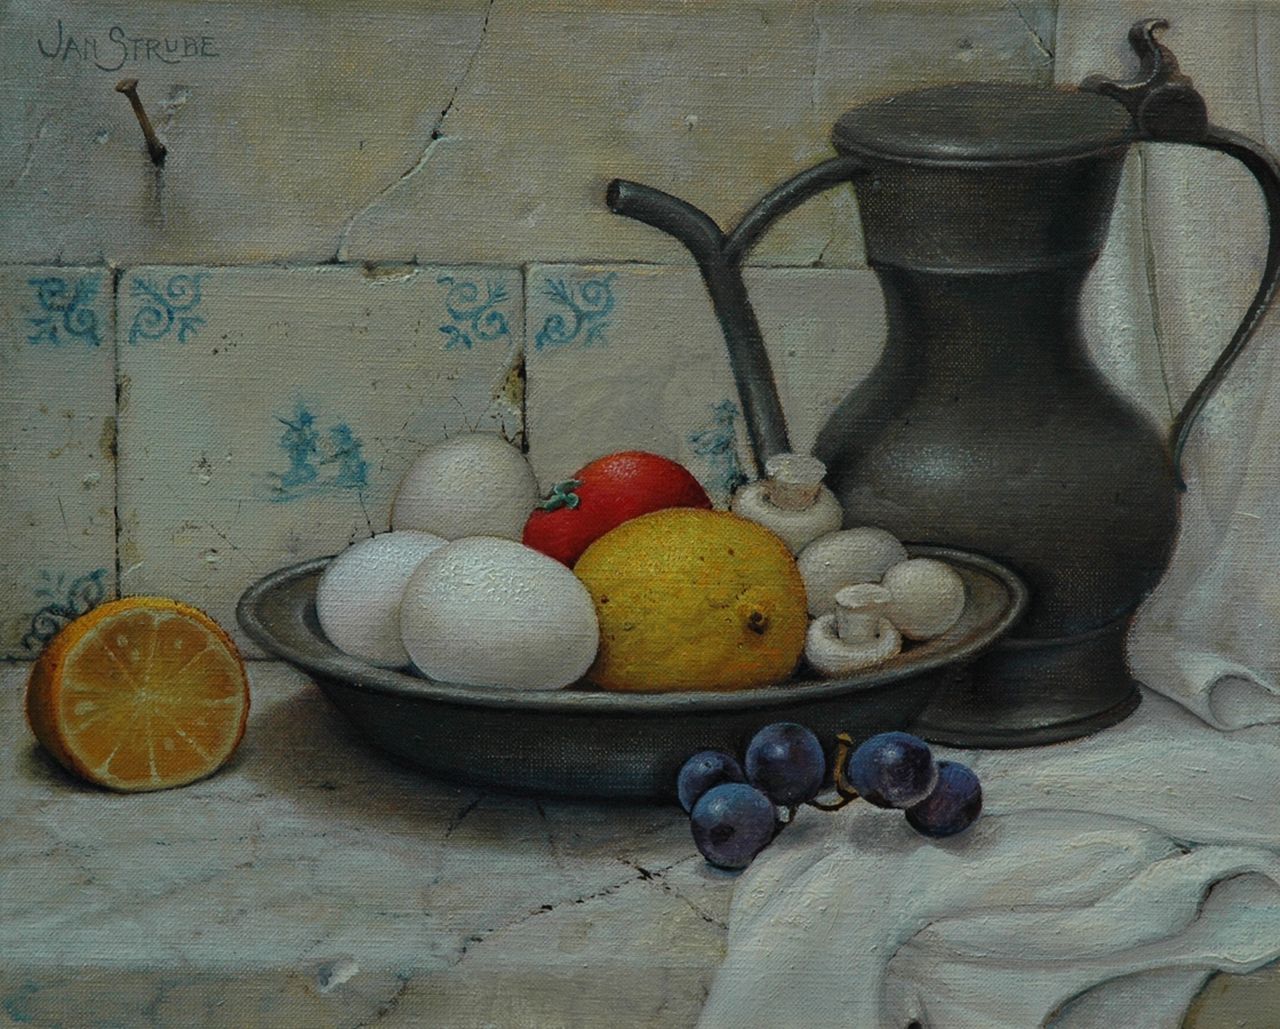 Strube J.H.  | Johan Hendrik 'Jan' Strube, Stilleven met fruitschaal en tinnen kan, olieverf op doek 24,2 x 30,4 cm, gesigneerd linksboven